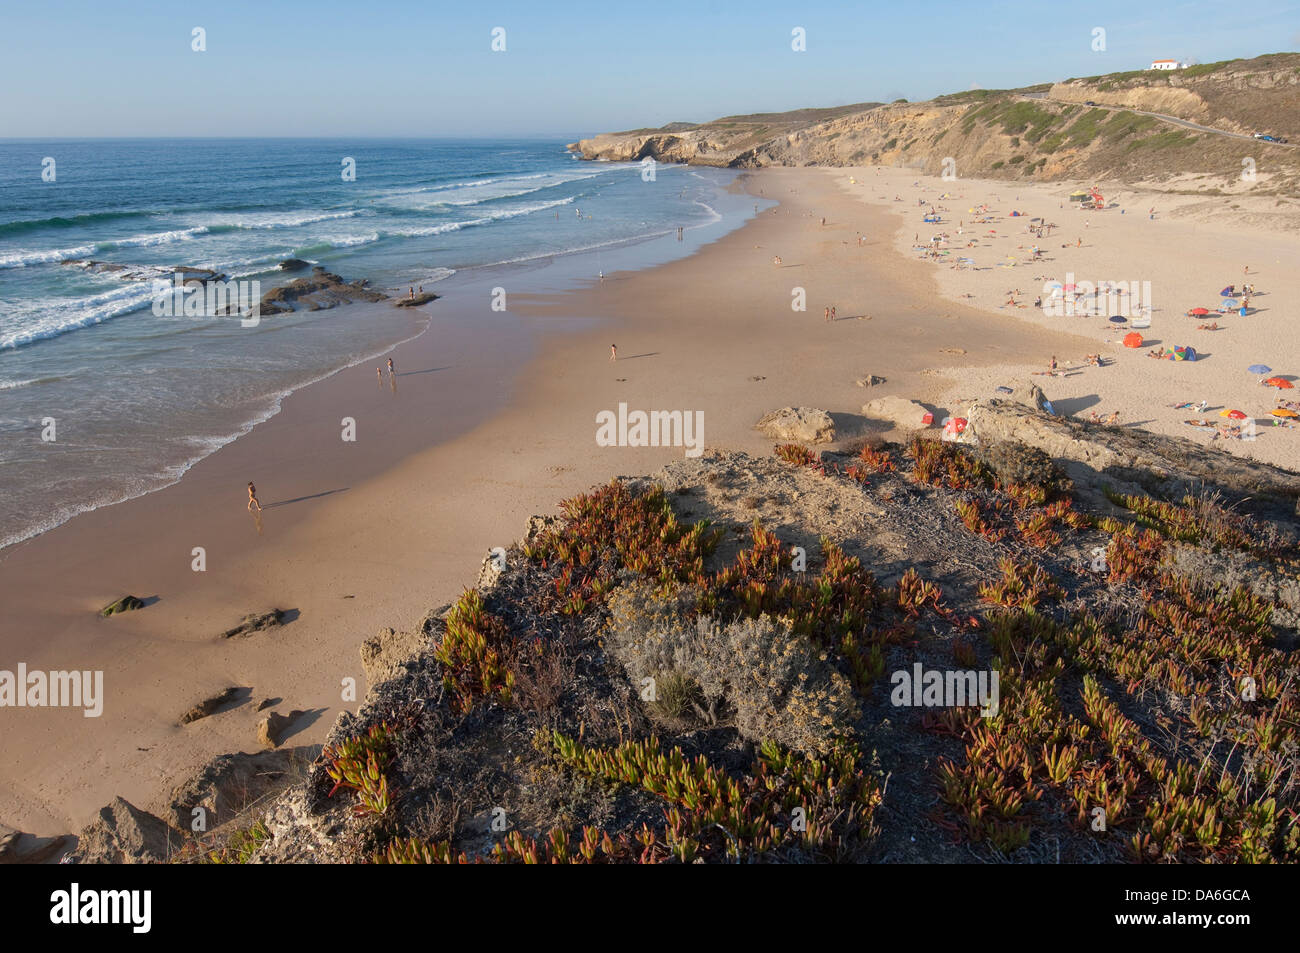 Algarve, swimming, rock, cliff, cliffs, sea, Monte Clerigo, Portugal, Europe, beach, seashore, Aljezur, scenery, landscape, Stock Photo